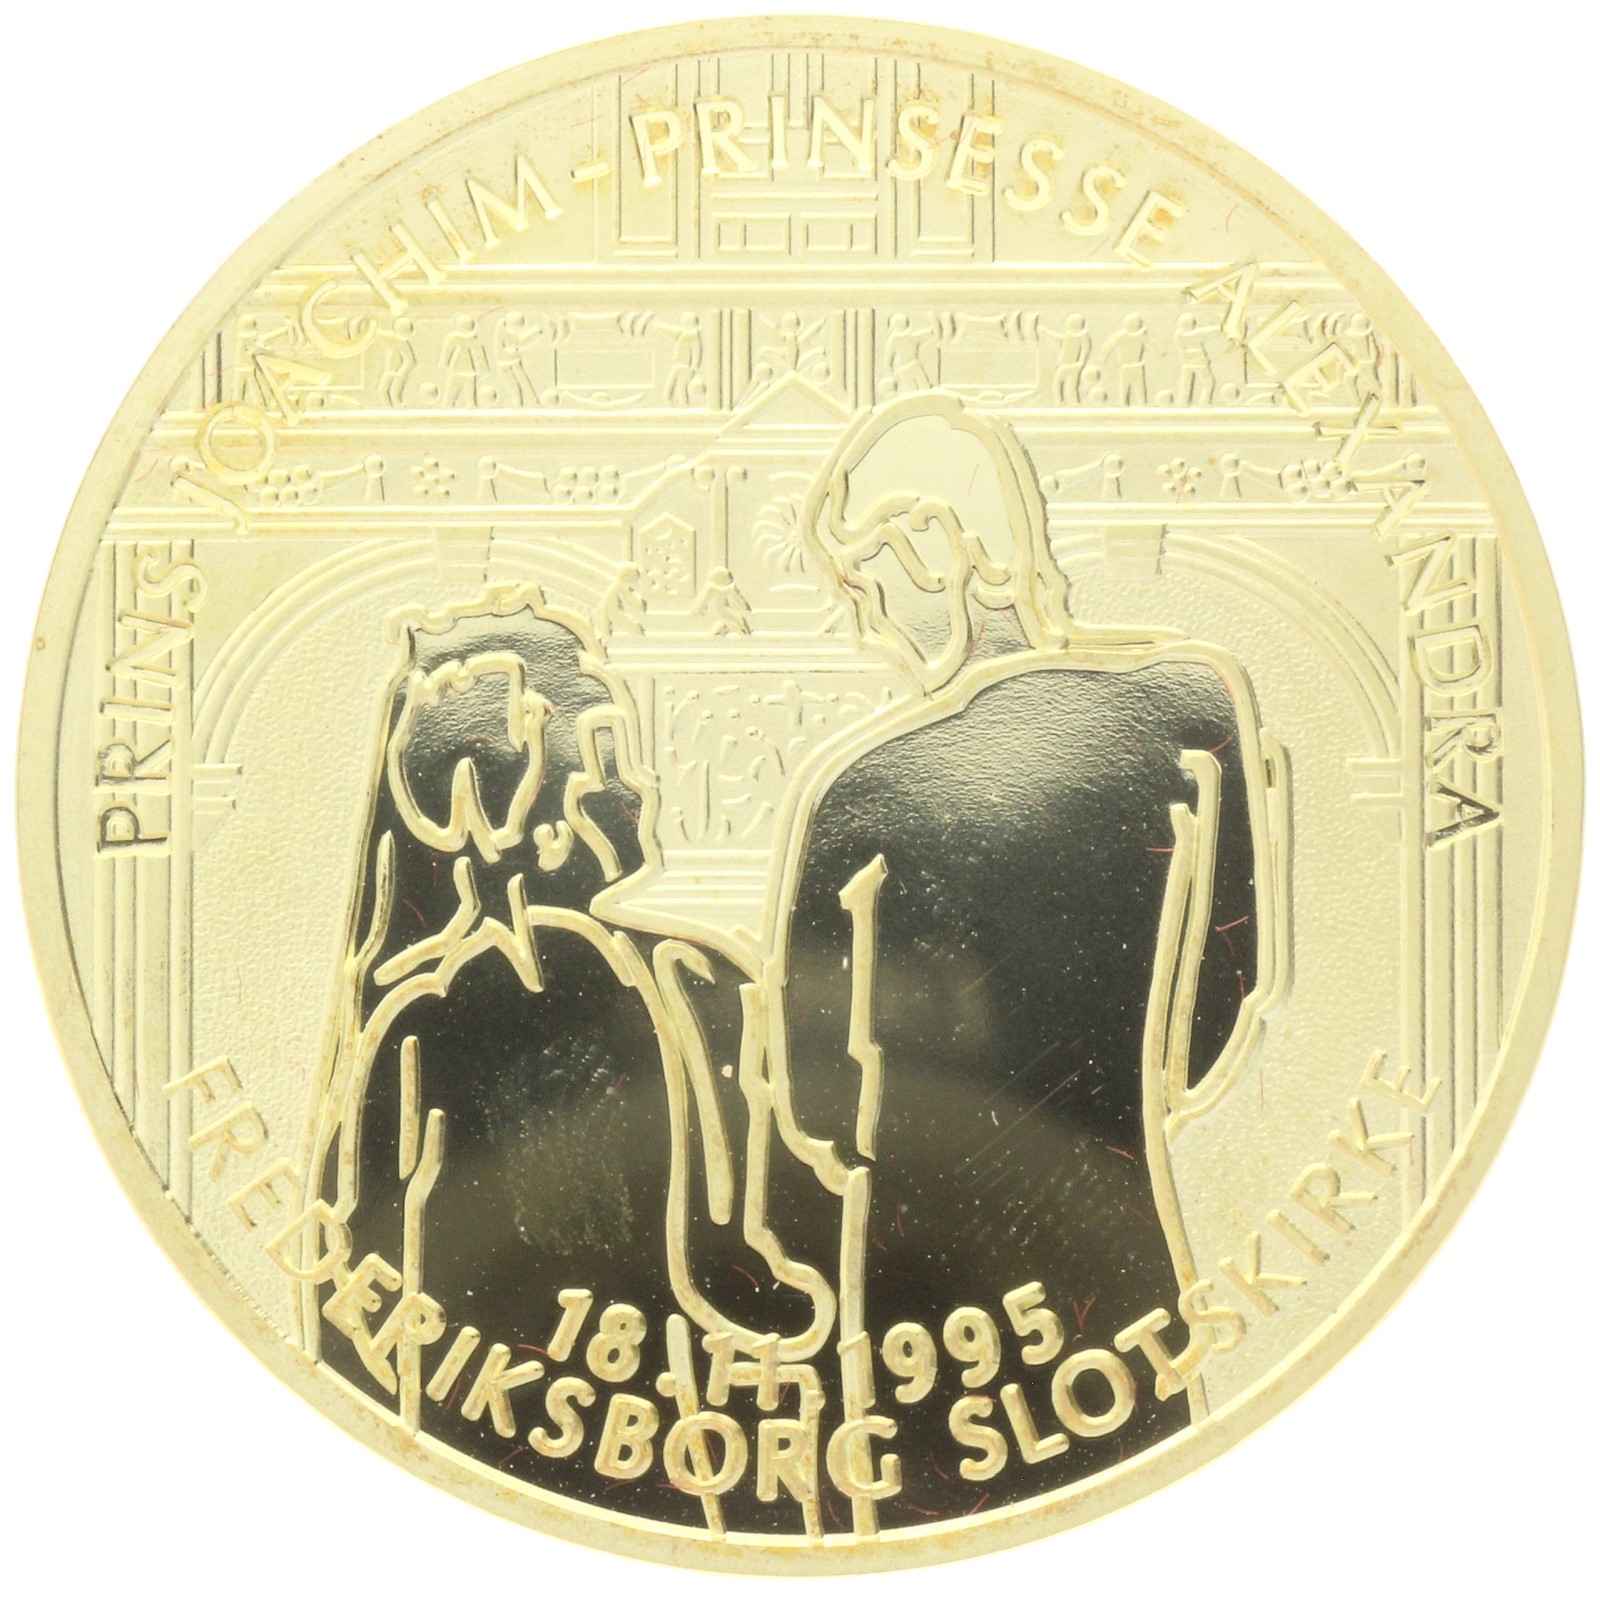 Denmark - Wedding medal - 1995 